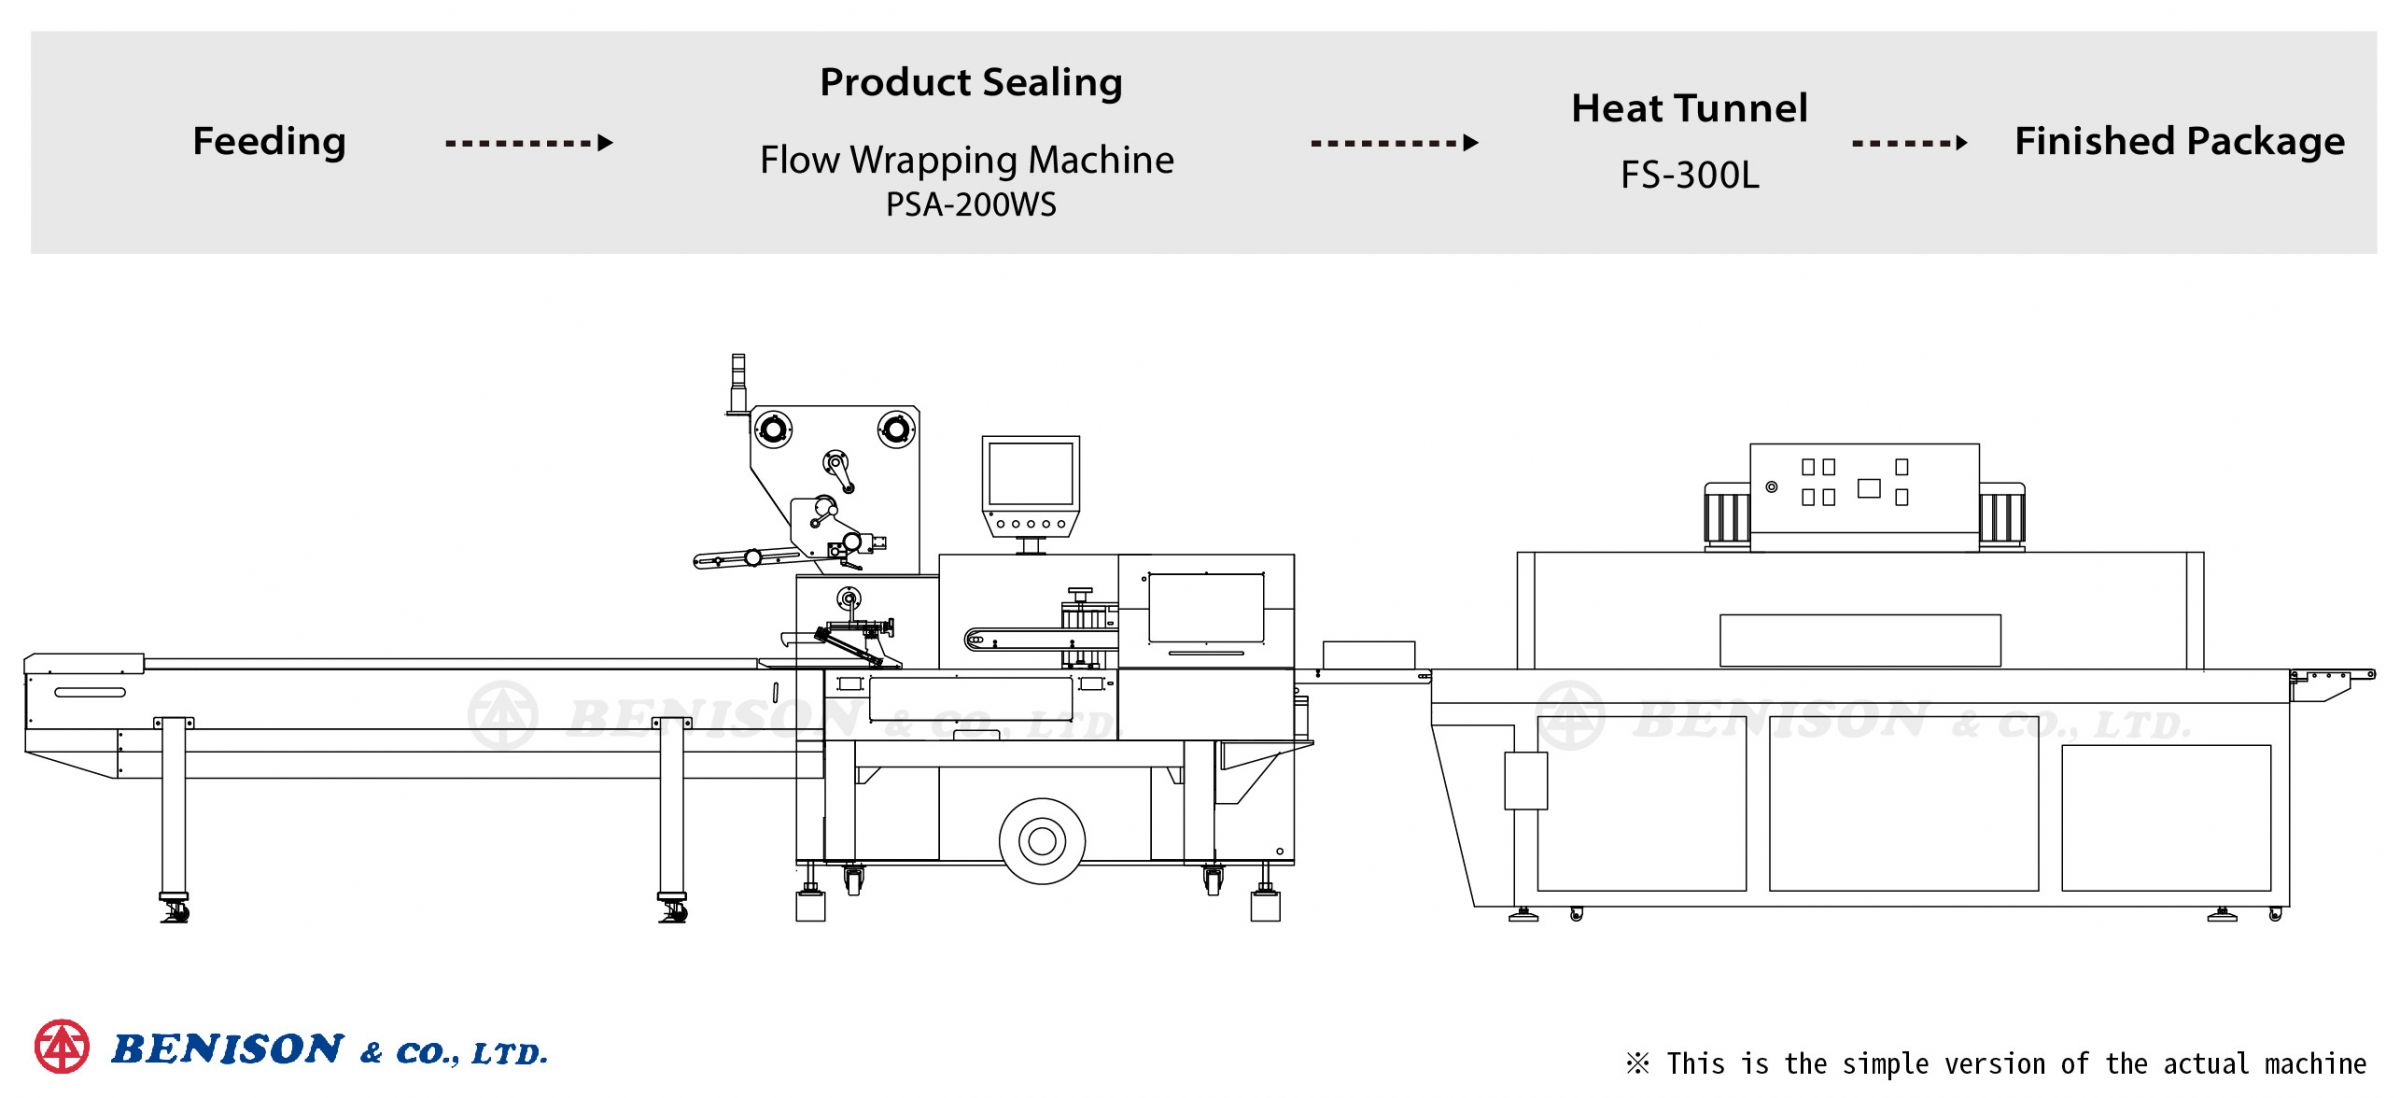 เครื่องห่อหุ้มแนวนอน PSA-200WS + ทั้งเทียน FS-300L สำหรับโซลูชั่นสินค้าฝาปิดเพลังงาน